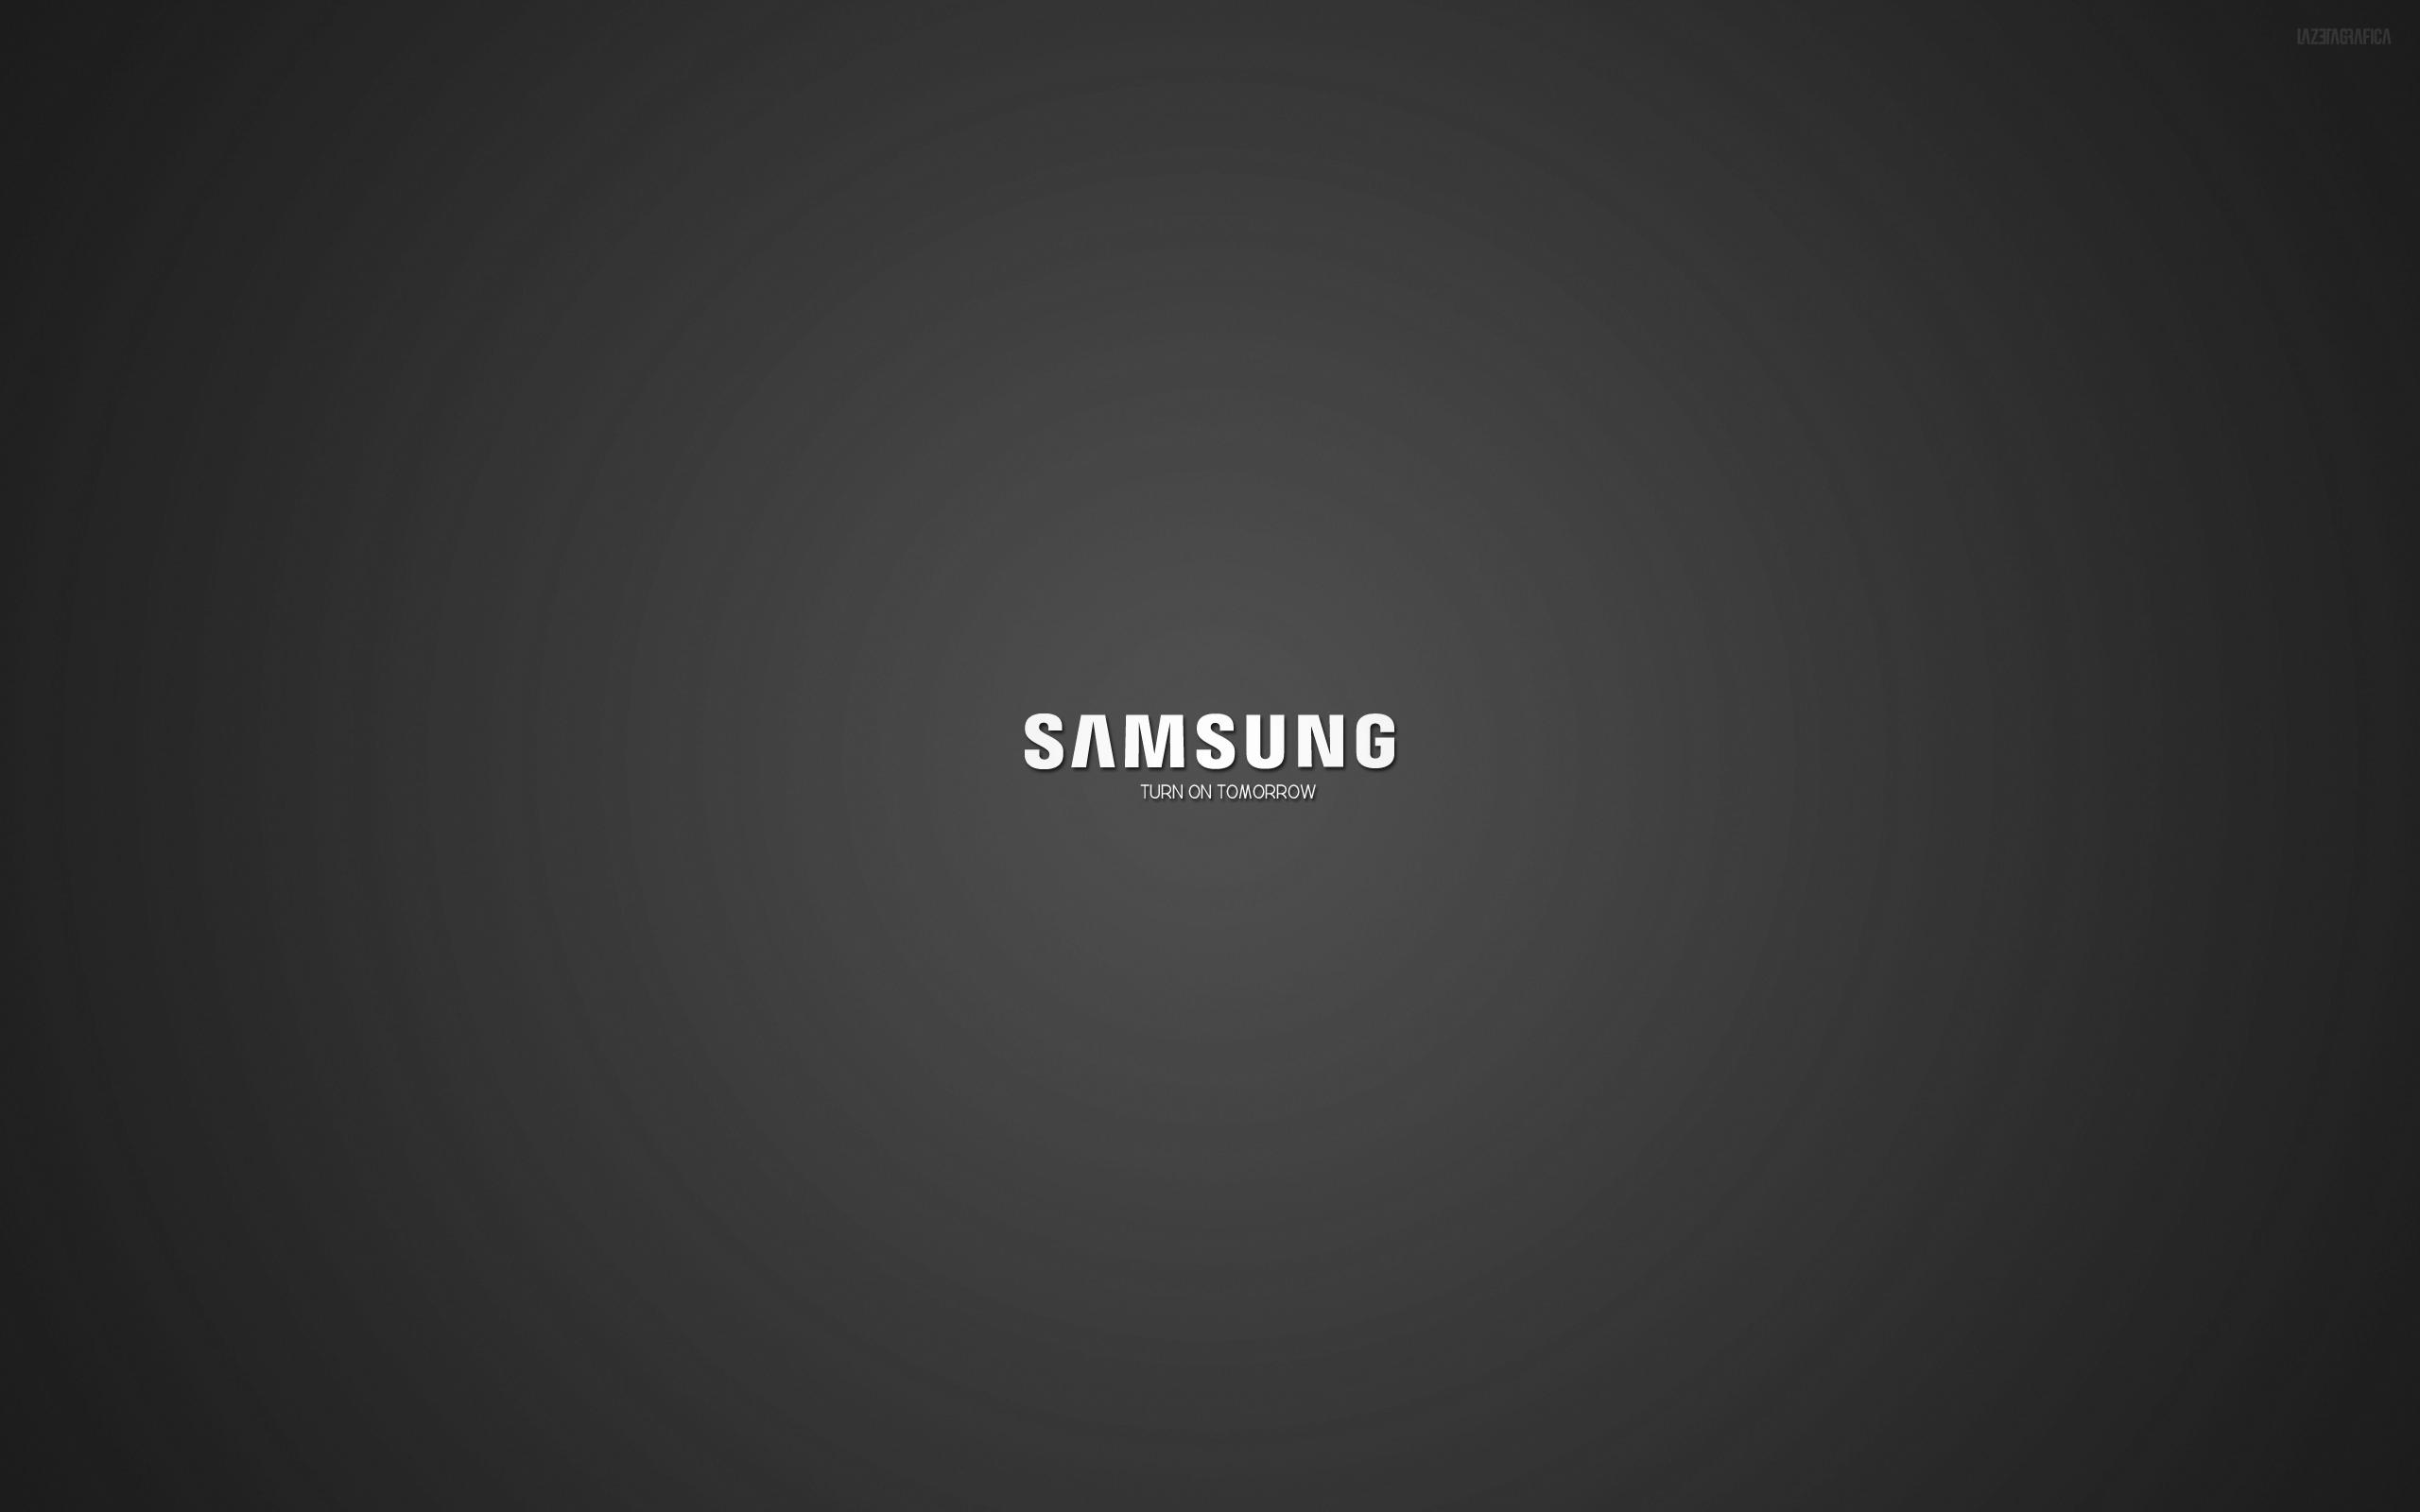 Logo của Samsung lúc nào cũng rất đẹp và ấn tượng. Với chỉ một cú nhấp chuột, bạn có thể tải về miễn phí những hình nền đen với logo của Samsung. Điều này sẽ giúp đội hình của bạn trông chuyên nghiệp và đáng tin cậy hơn bao giờ hết. Truy cập trang web của chúng tôi để có những hình nền đẹp nhất.